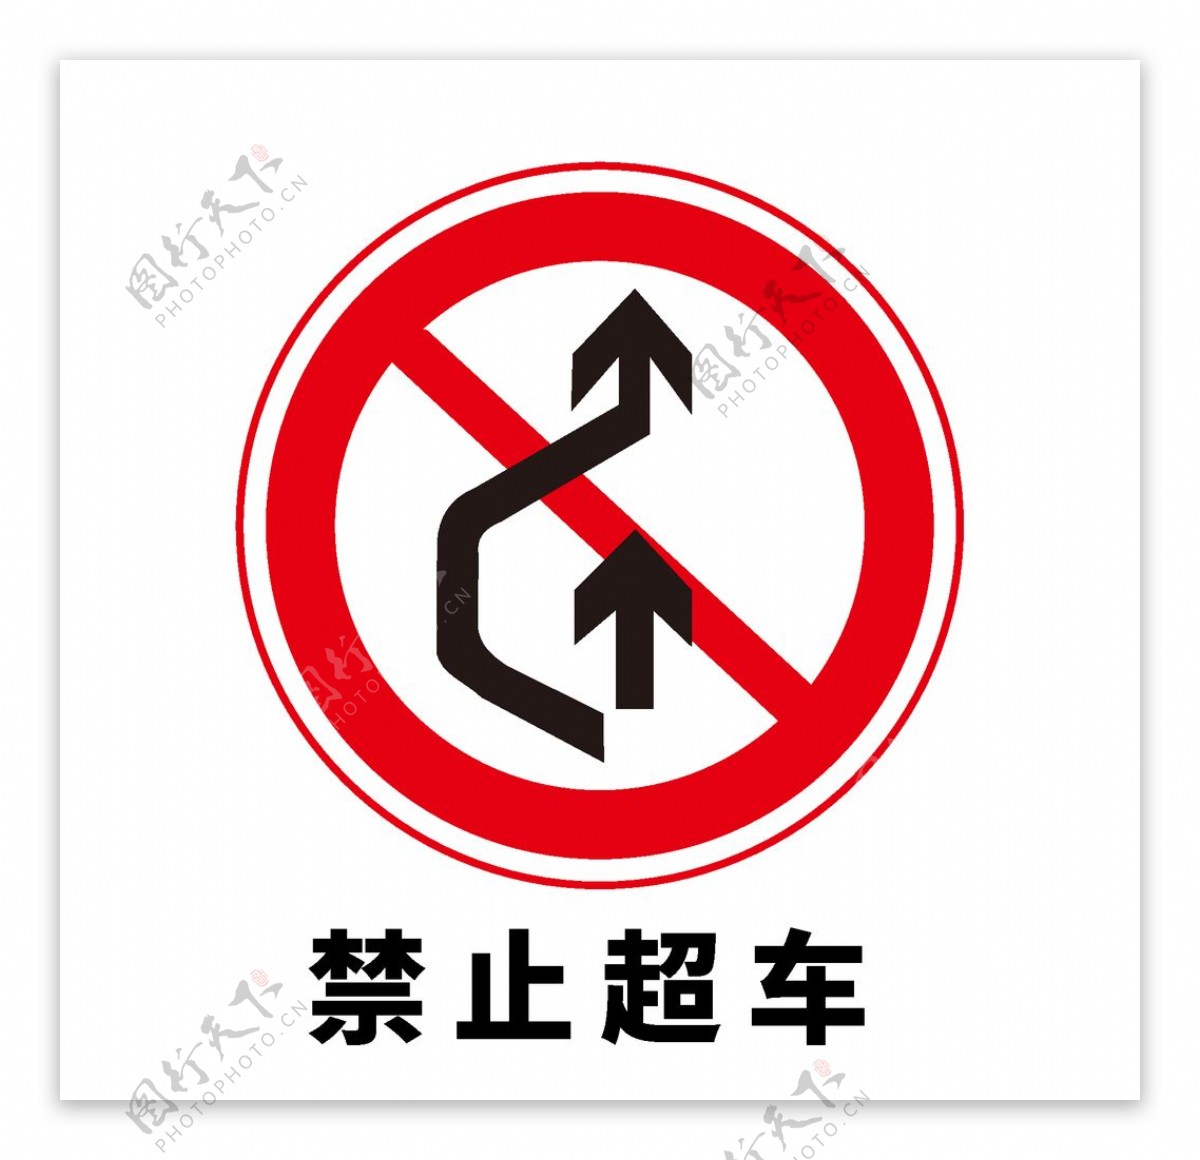 矢量交通标志禁止超车图片